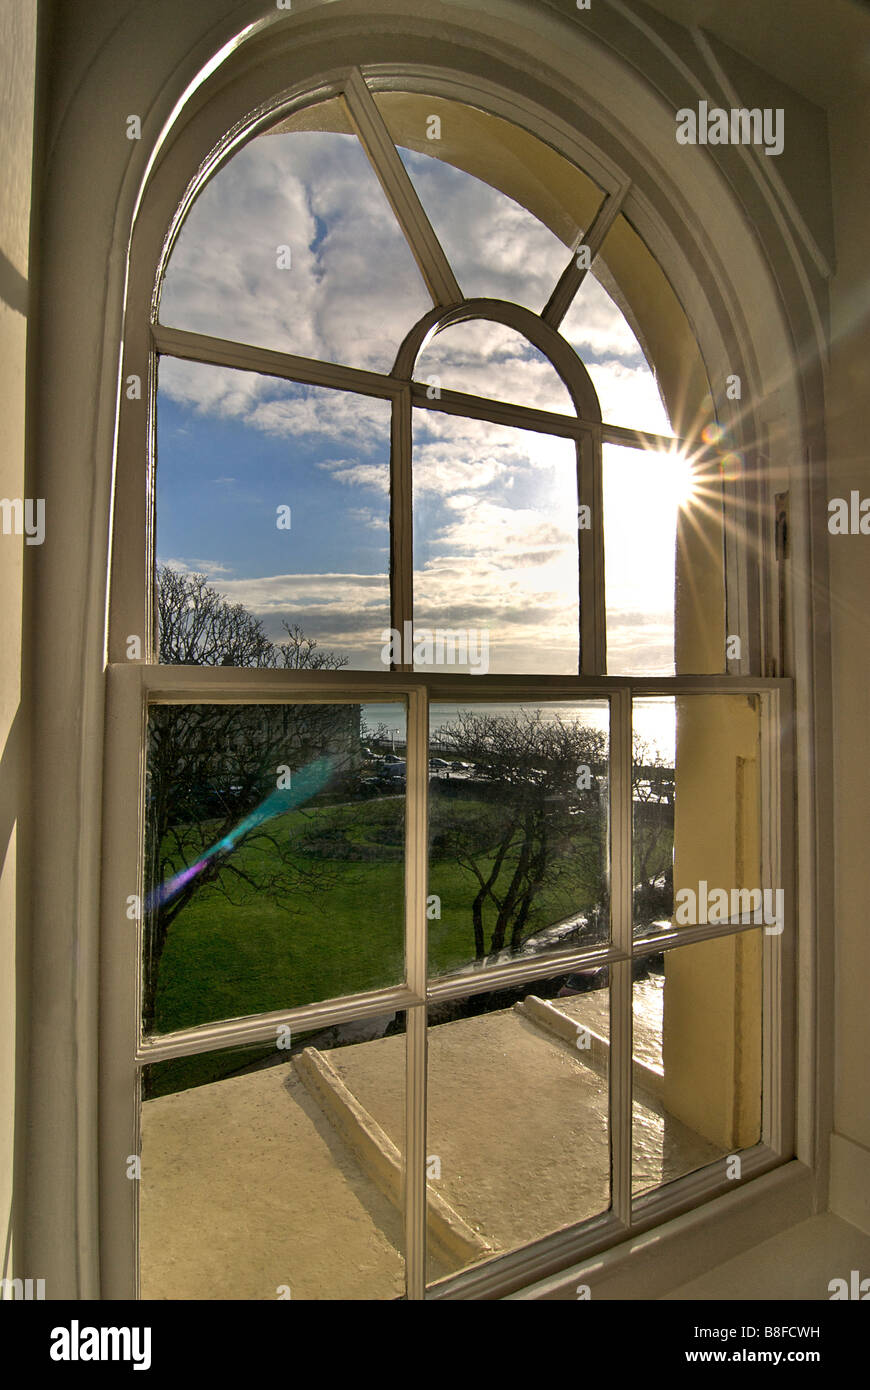 Interno. Guardando fuori da una finestra ad arco verso il mare. Architettura Regency Brunswick Square, Hove, East Sussex, Inghilterra Foto Stock